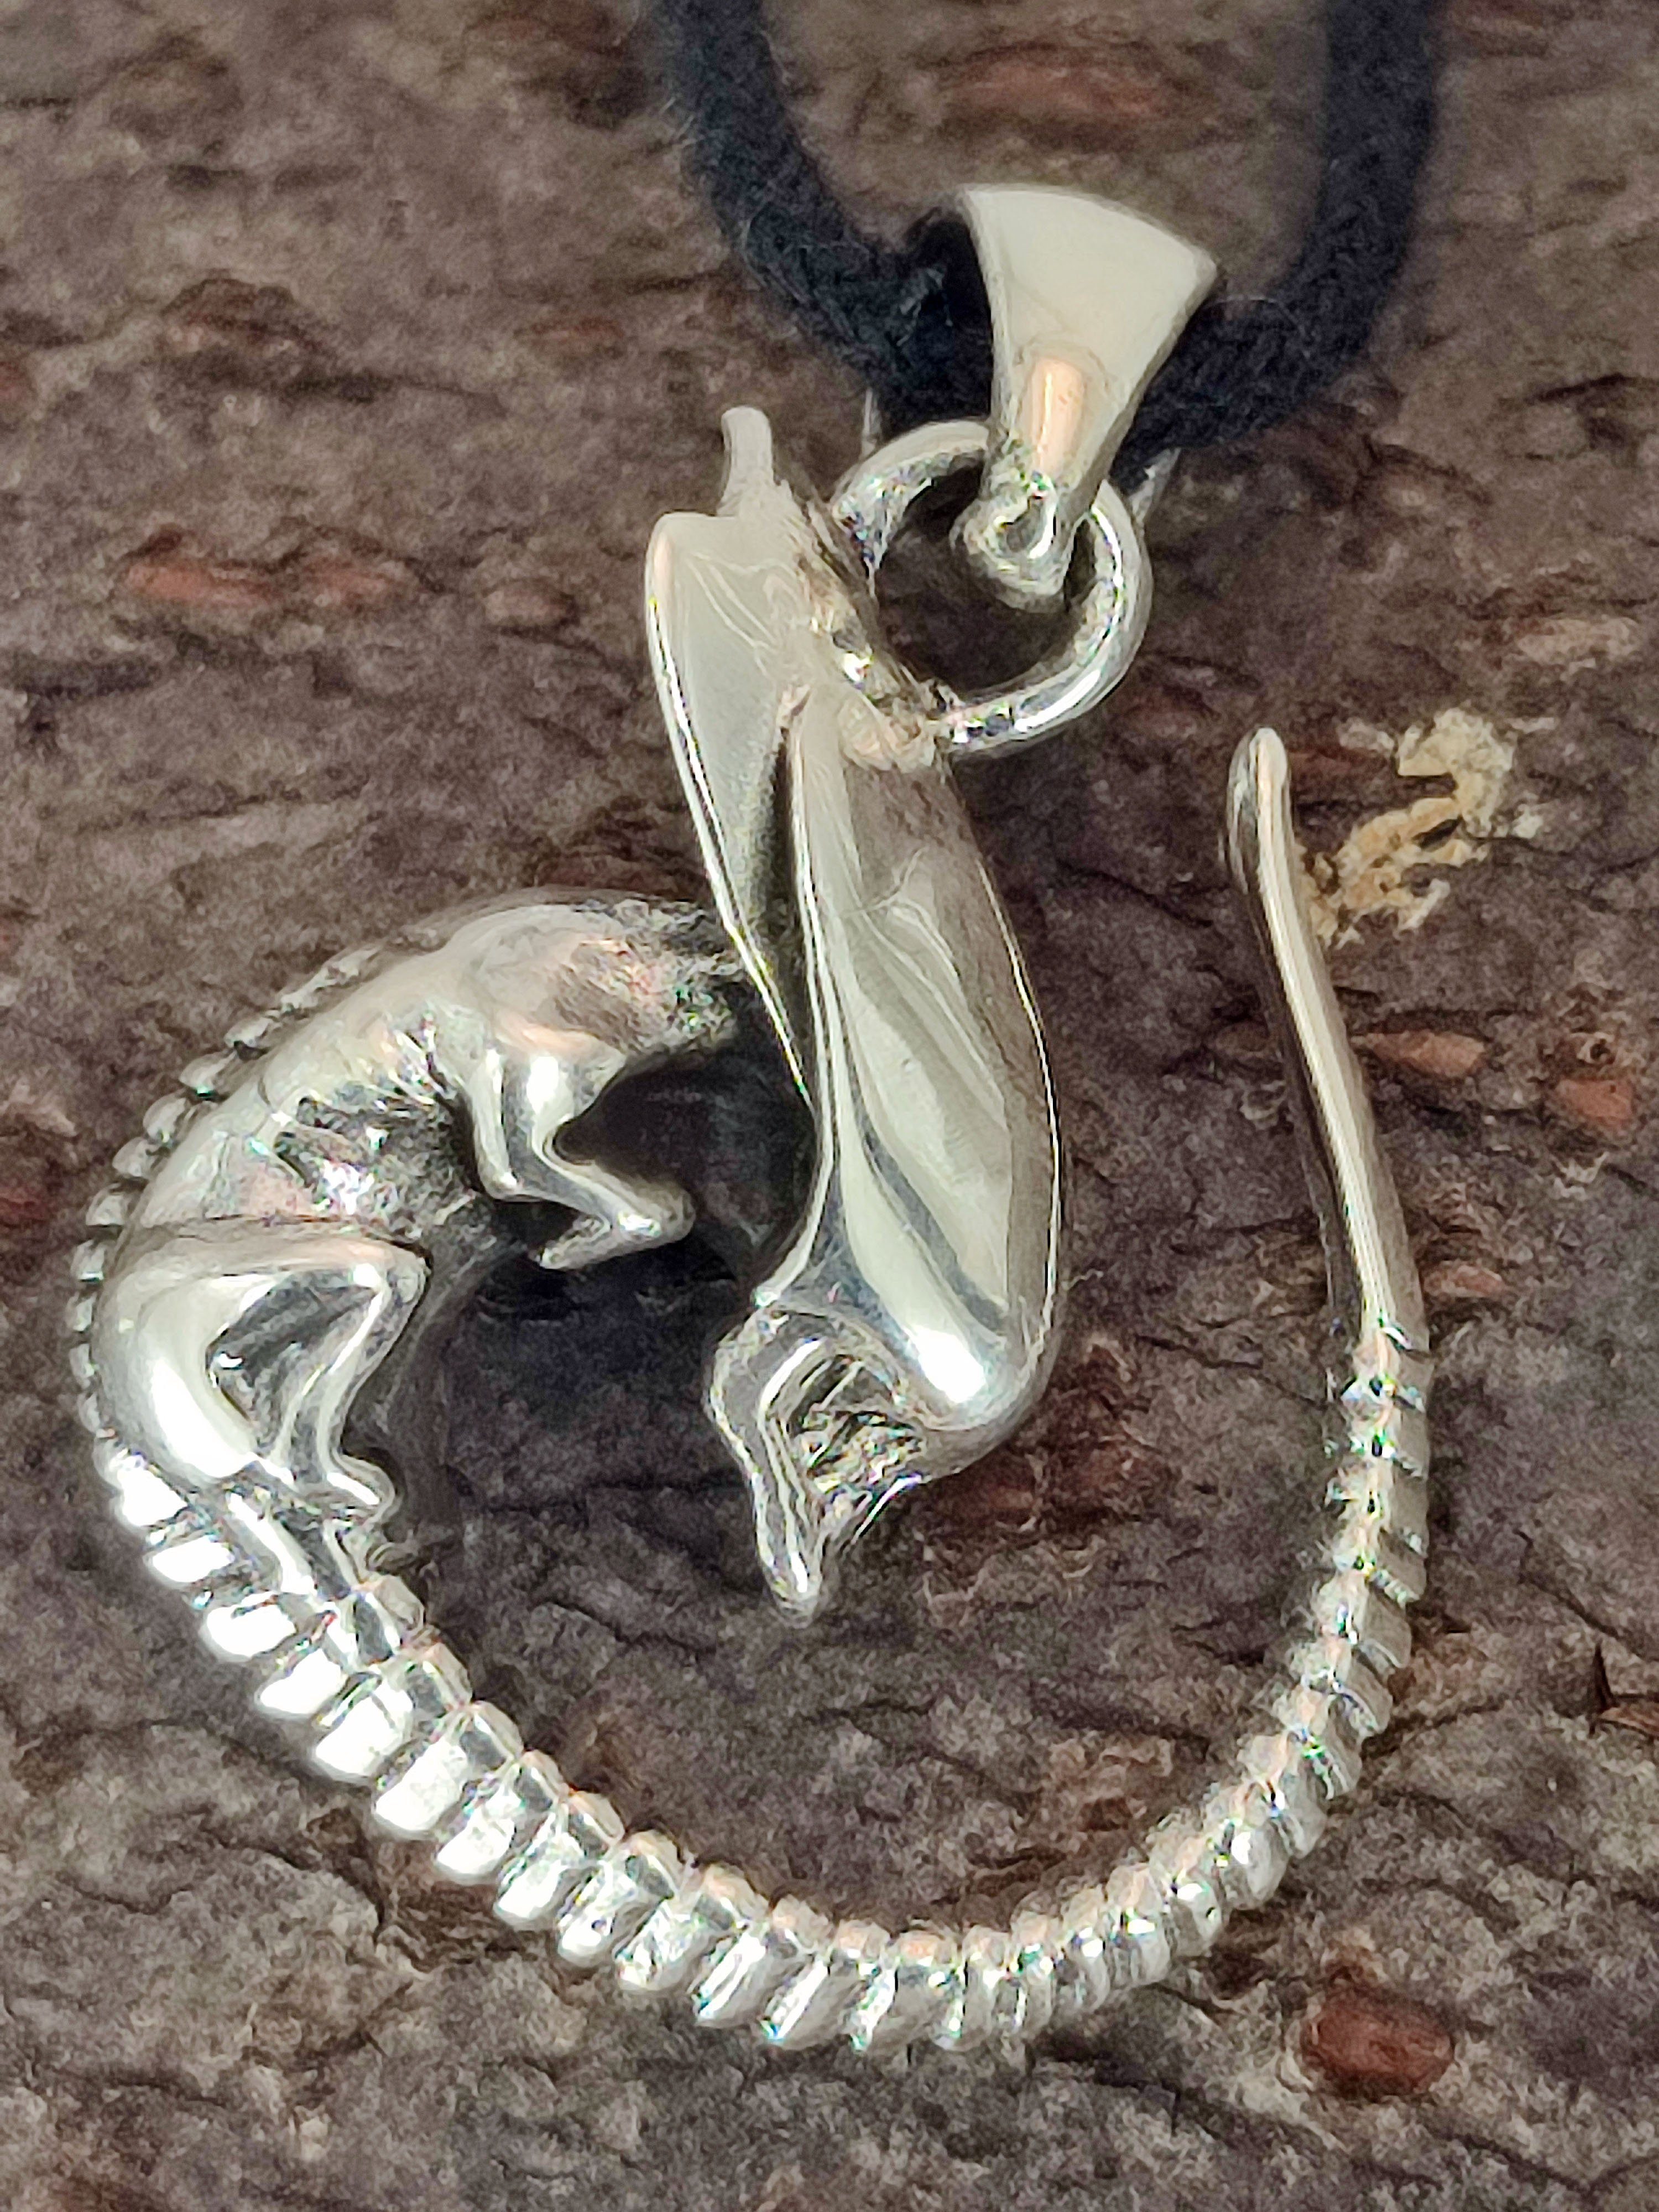 of Dreidimensionaler Leather Alien Kettenanhänger Kiss Massiv Silber